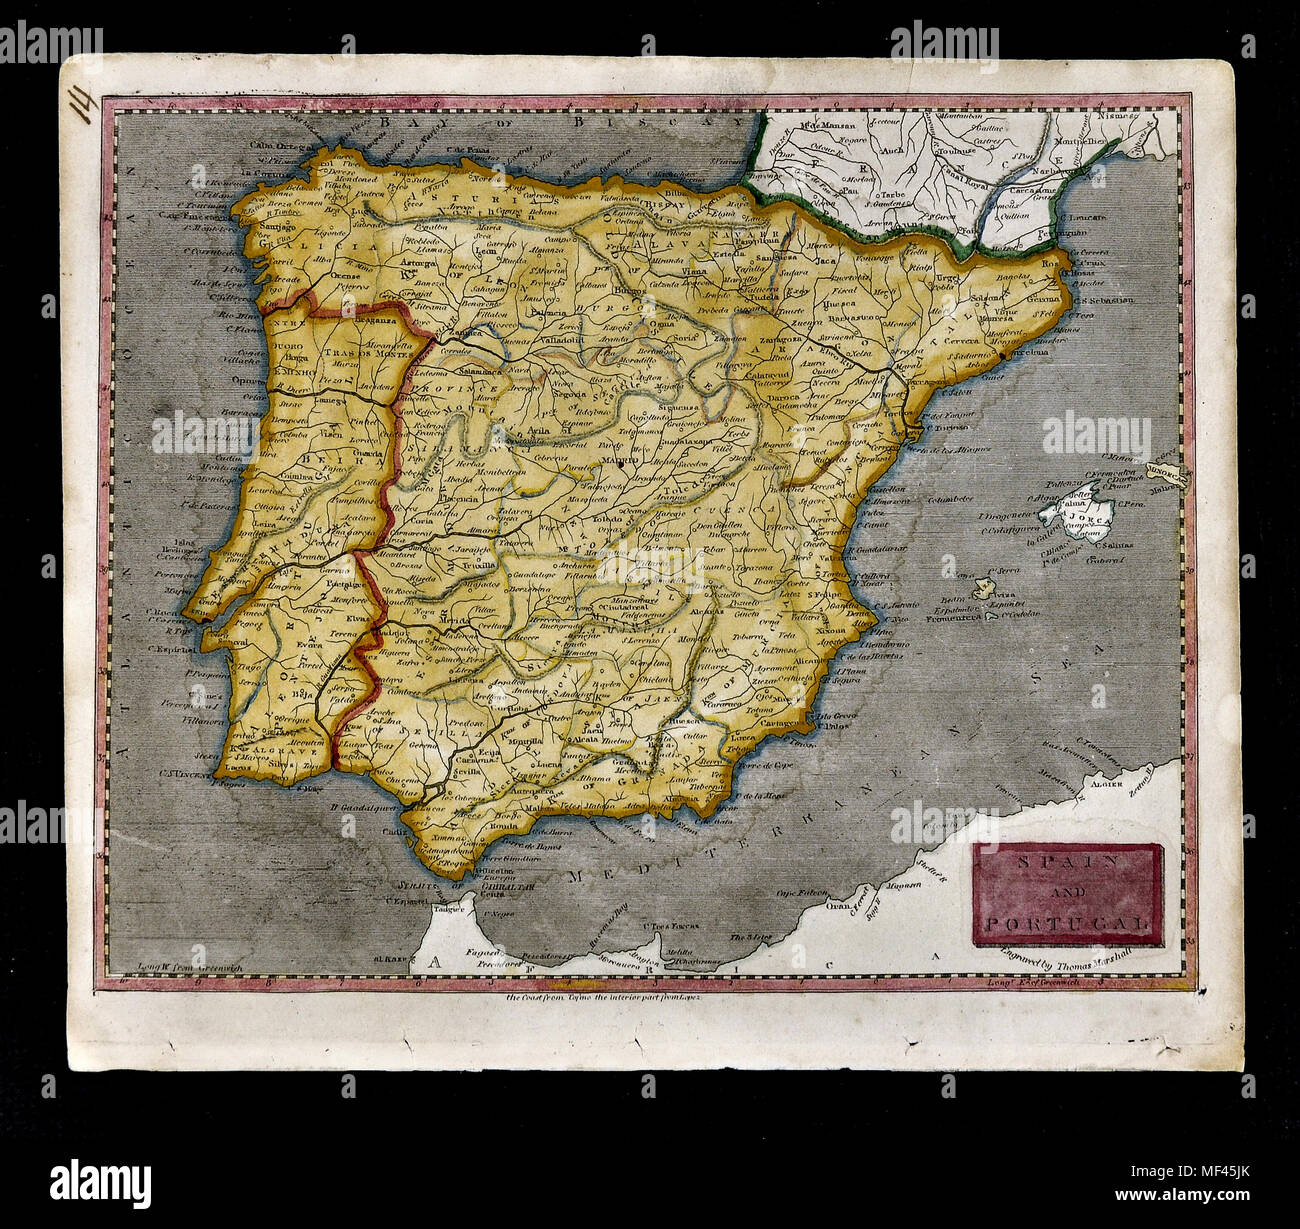 1804 Arrowsmith Map - Spain & Portugal - Lisbon Lisboa Braga Porto Oporto Algarve Madrid Barcelona Cadiz Toledo Europe Stock Photo